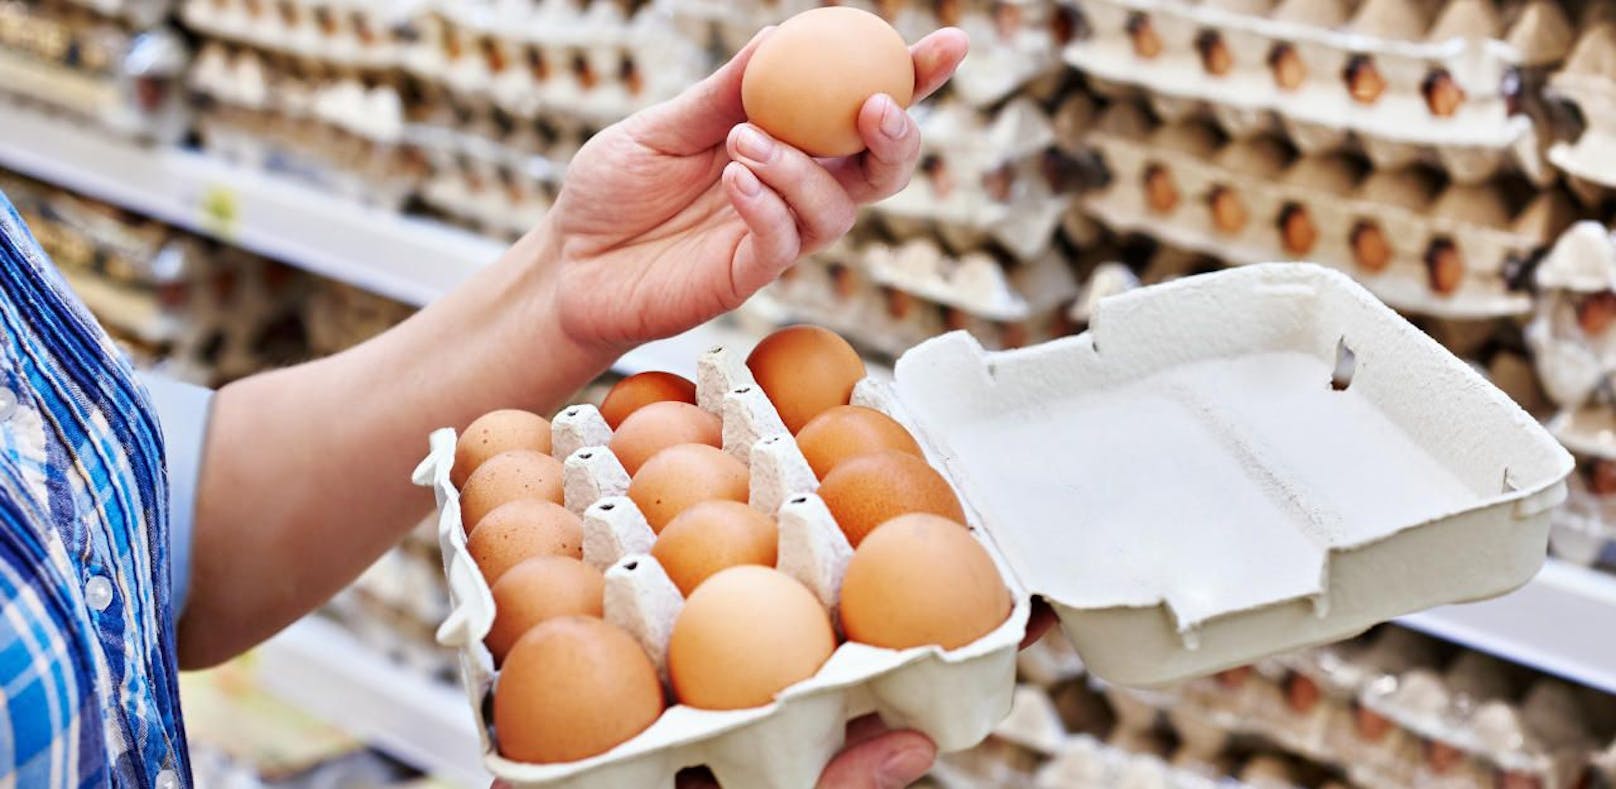 Auch bei oberösterreichischen Großhändlern sollen Fipronil-Eier entdeckt worden sein.